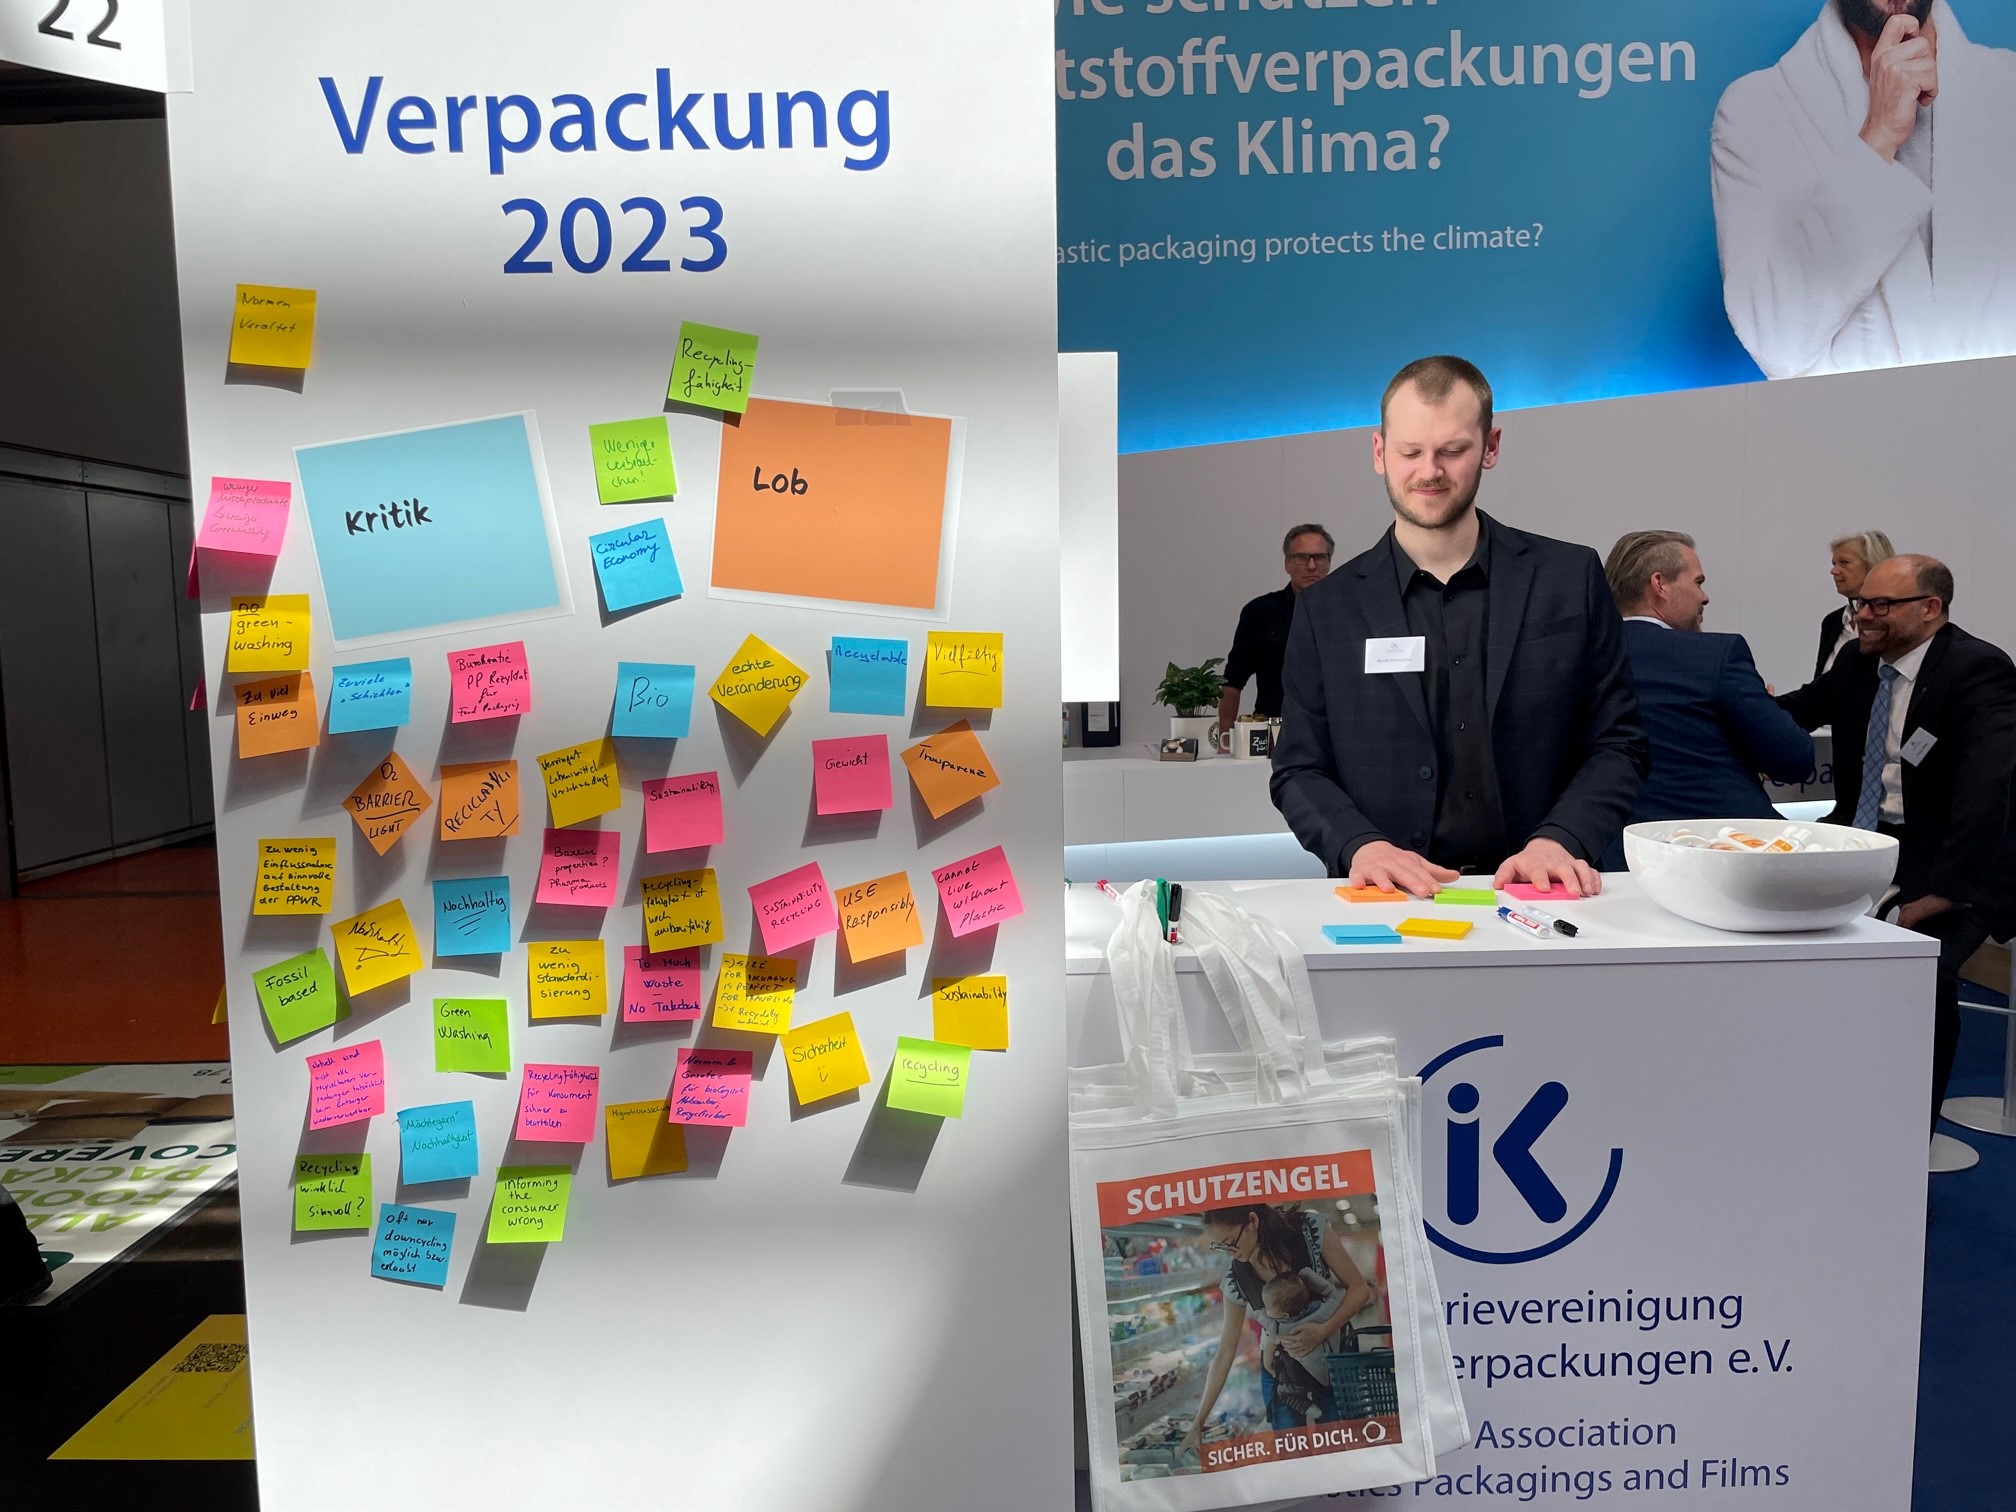 iK Industrievereinigung Kunststoffverpackungen auf der interpack 2023